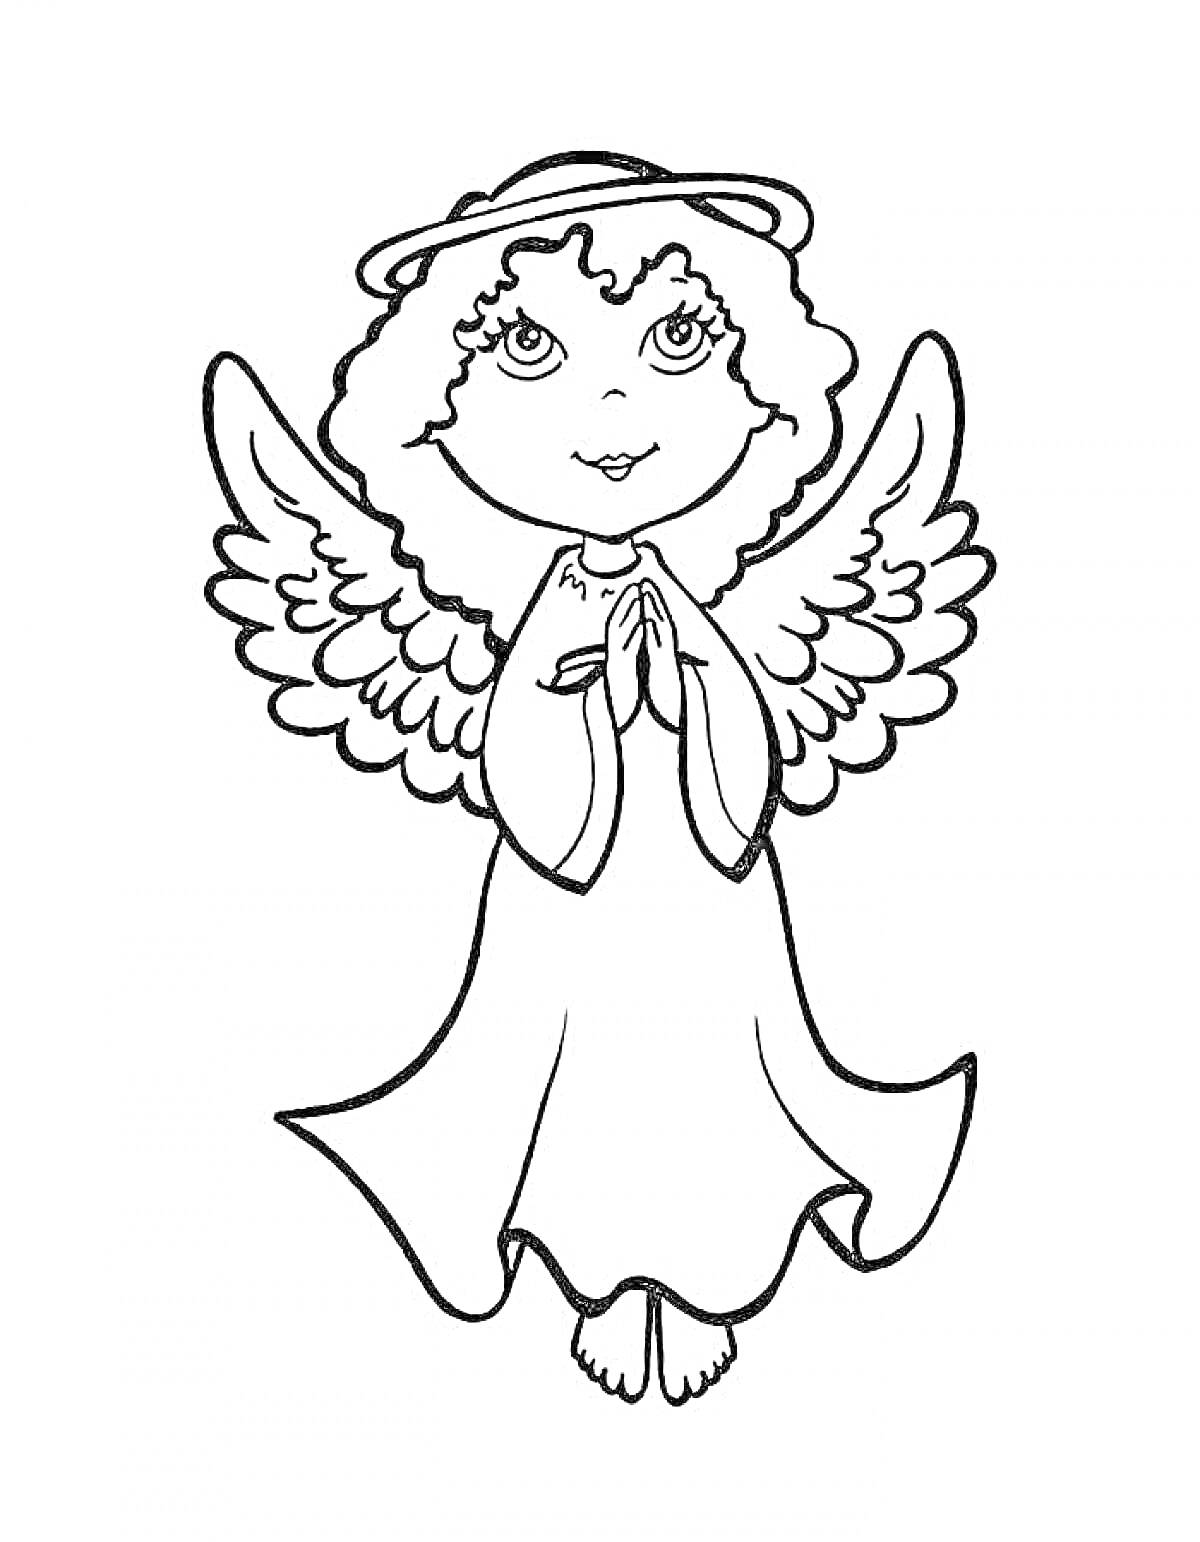 Ангел с кудрявыми волосами, в длинном платье, сложивший руки в молитве, с крыльями и нимбом